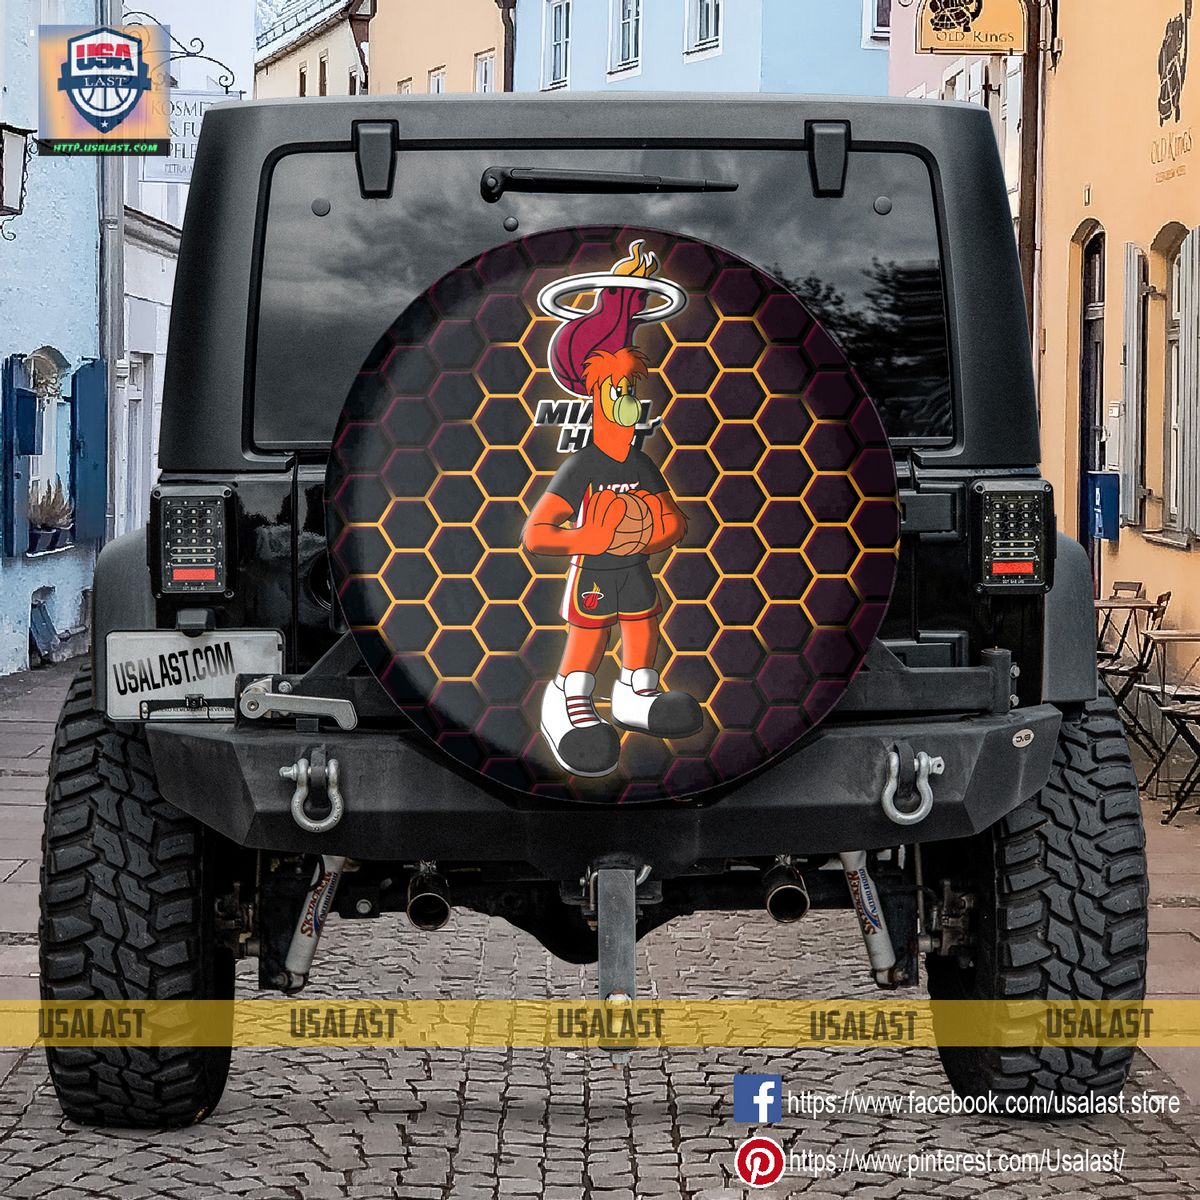 BEST Miami Heat NBA Mascot Spare Tire Cover